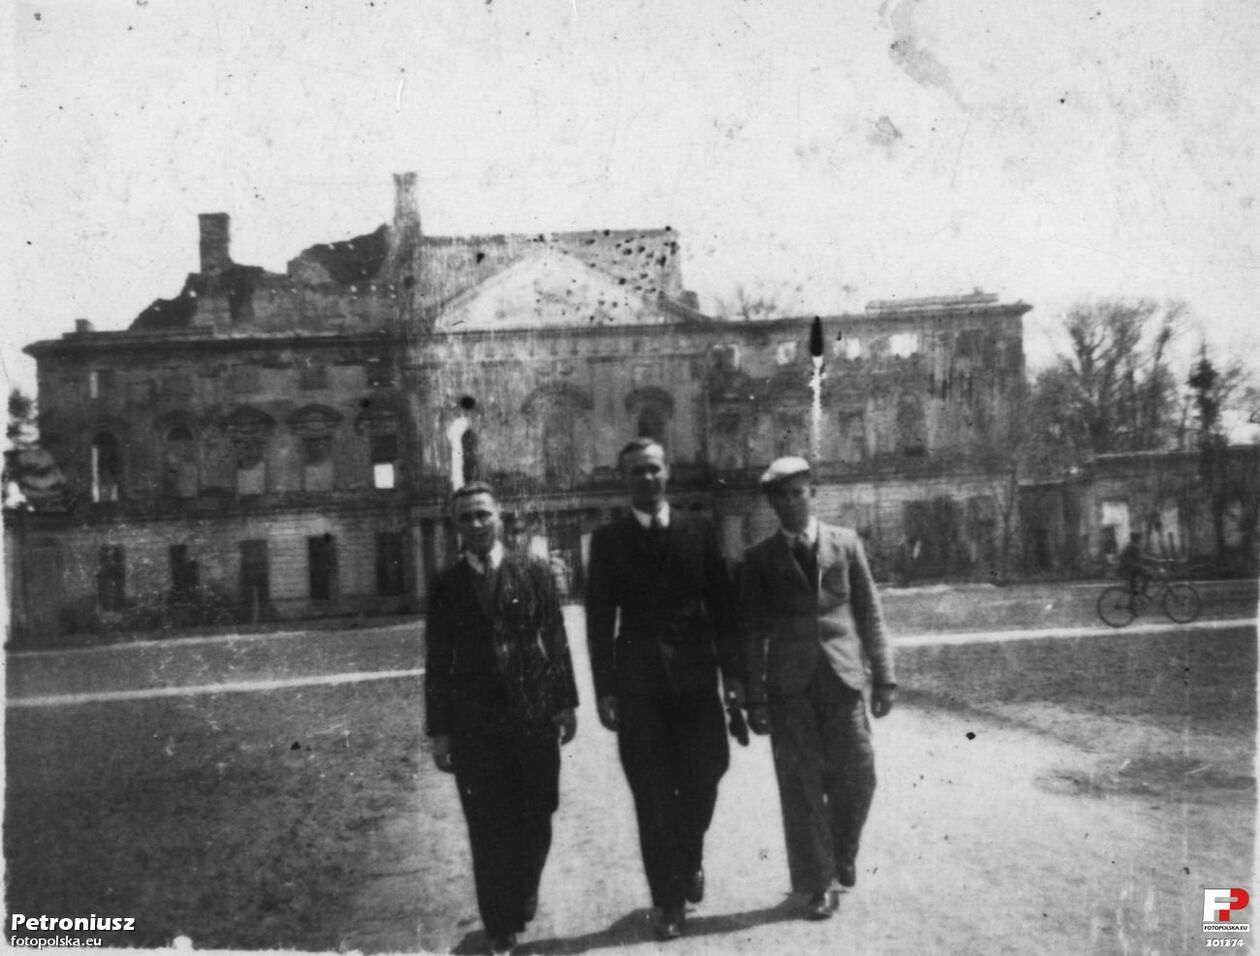  <p>Lata 1933-1934. Pałac Sanguszk&oacute;w w Lubartowie kr&oacute;tko po pożarze</p>